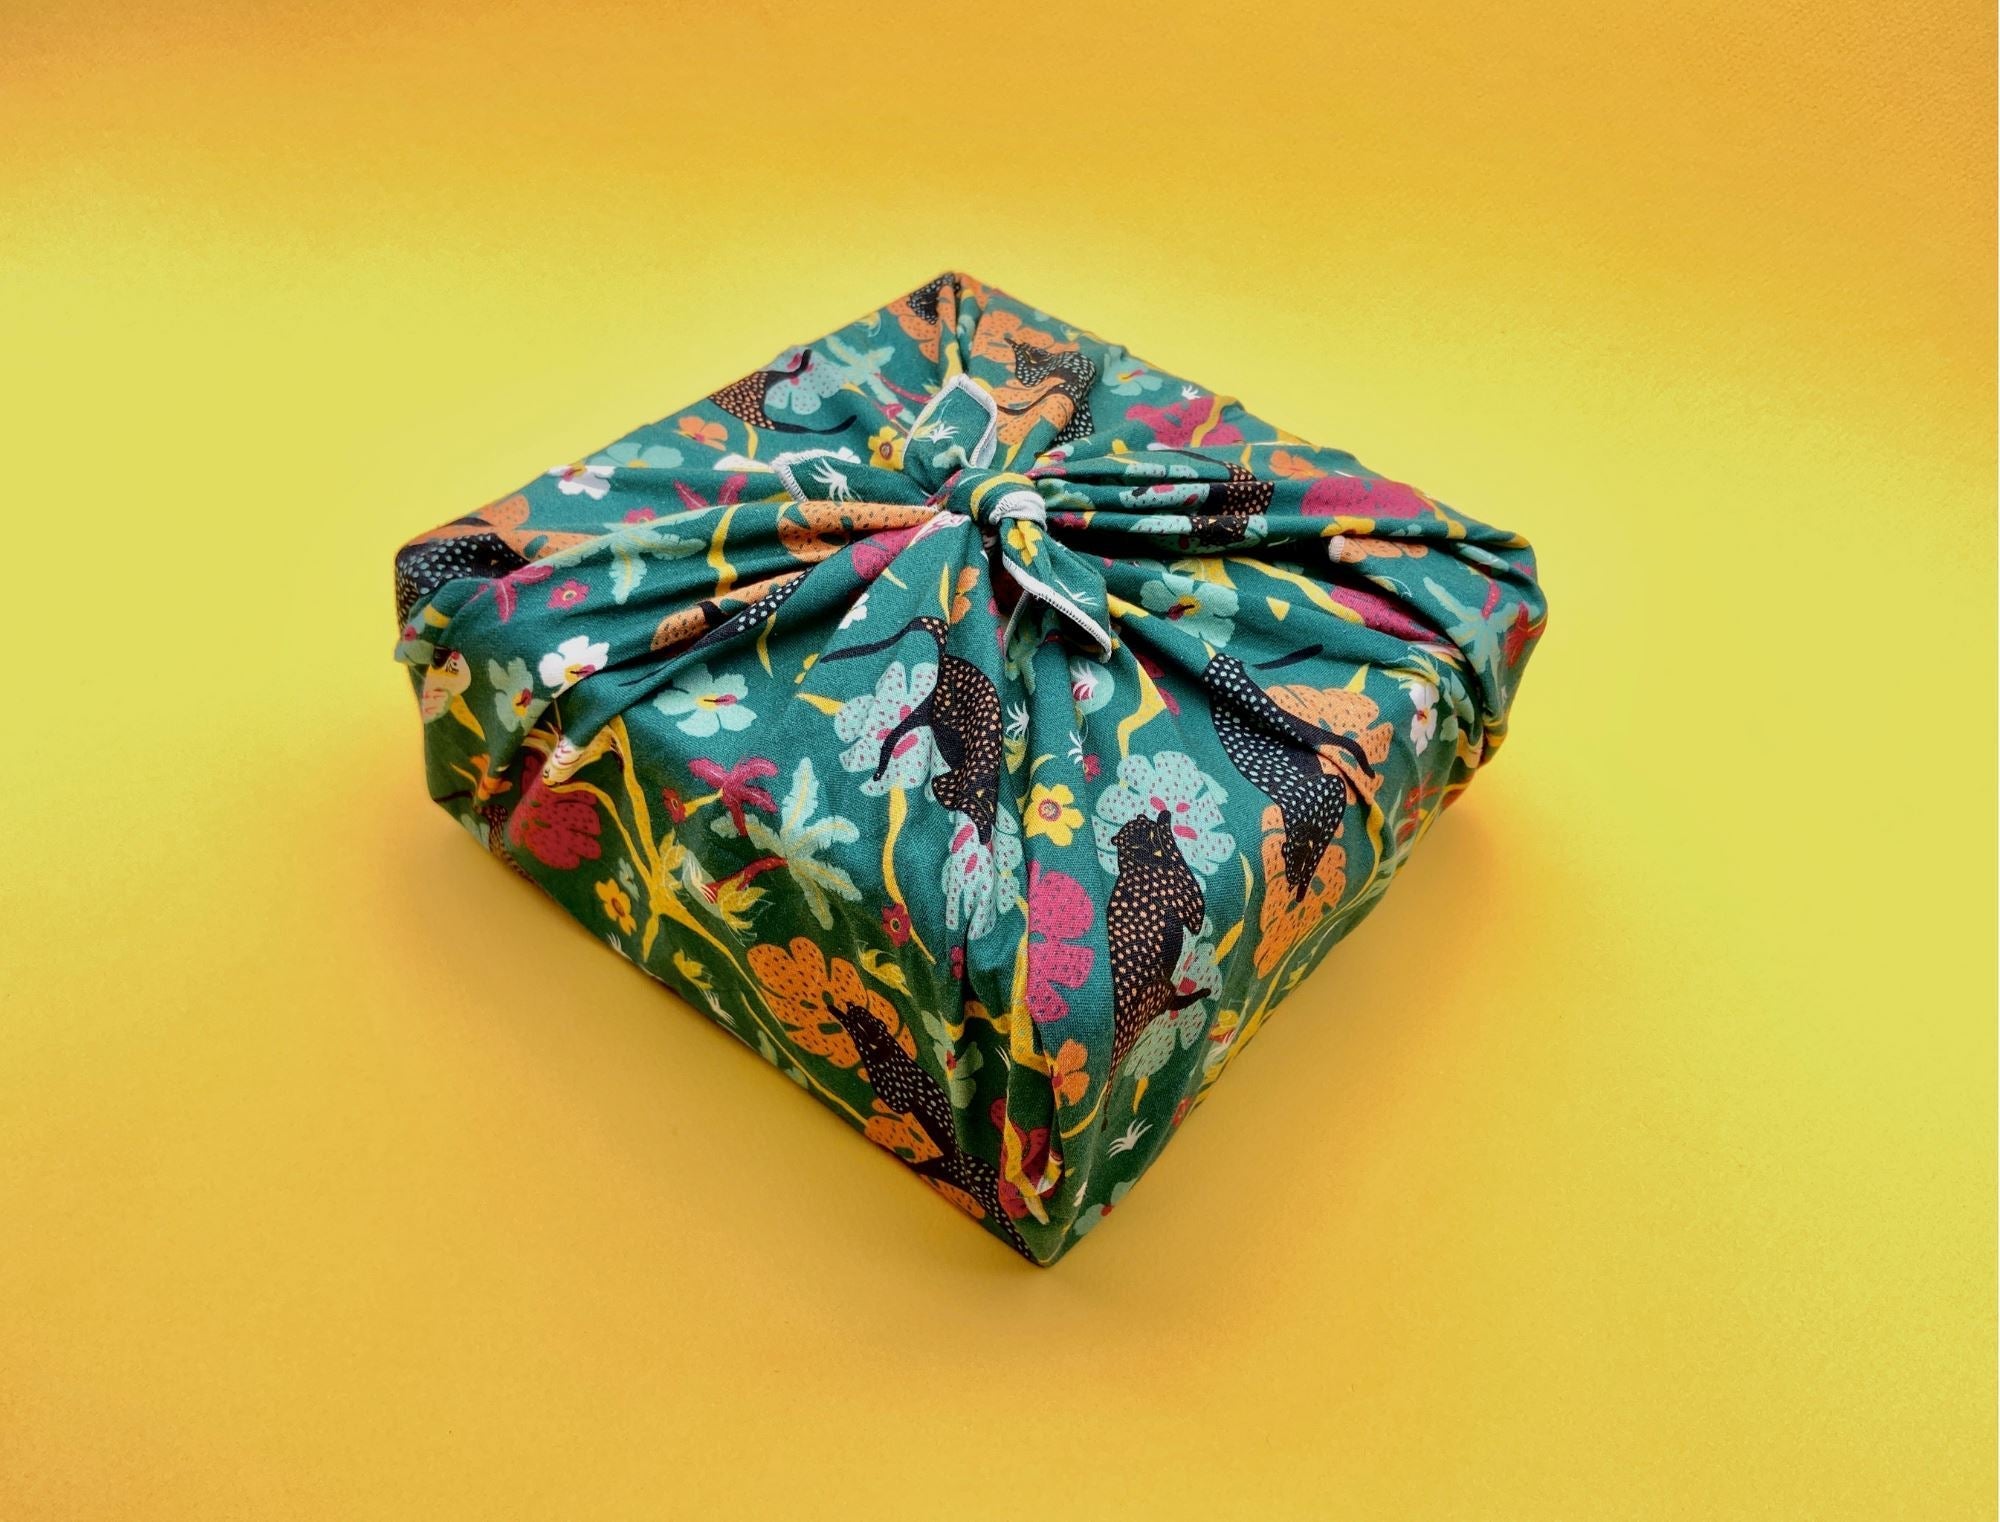 Les emballages cadeaux zéro déchet : meilleurs alliés pour un Noël écoresponsable